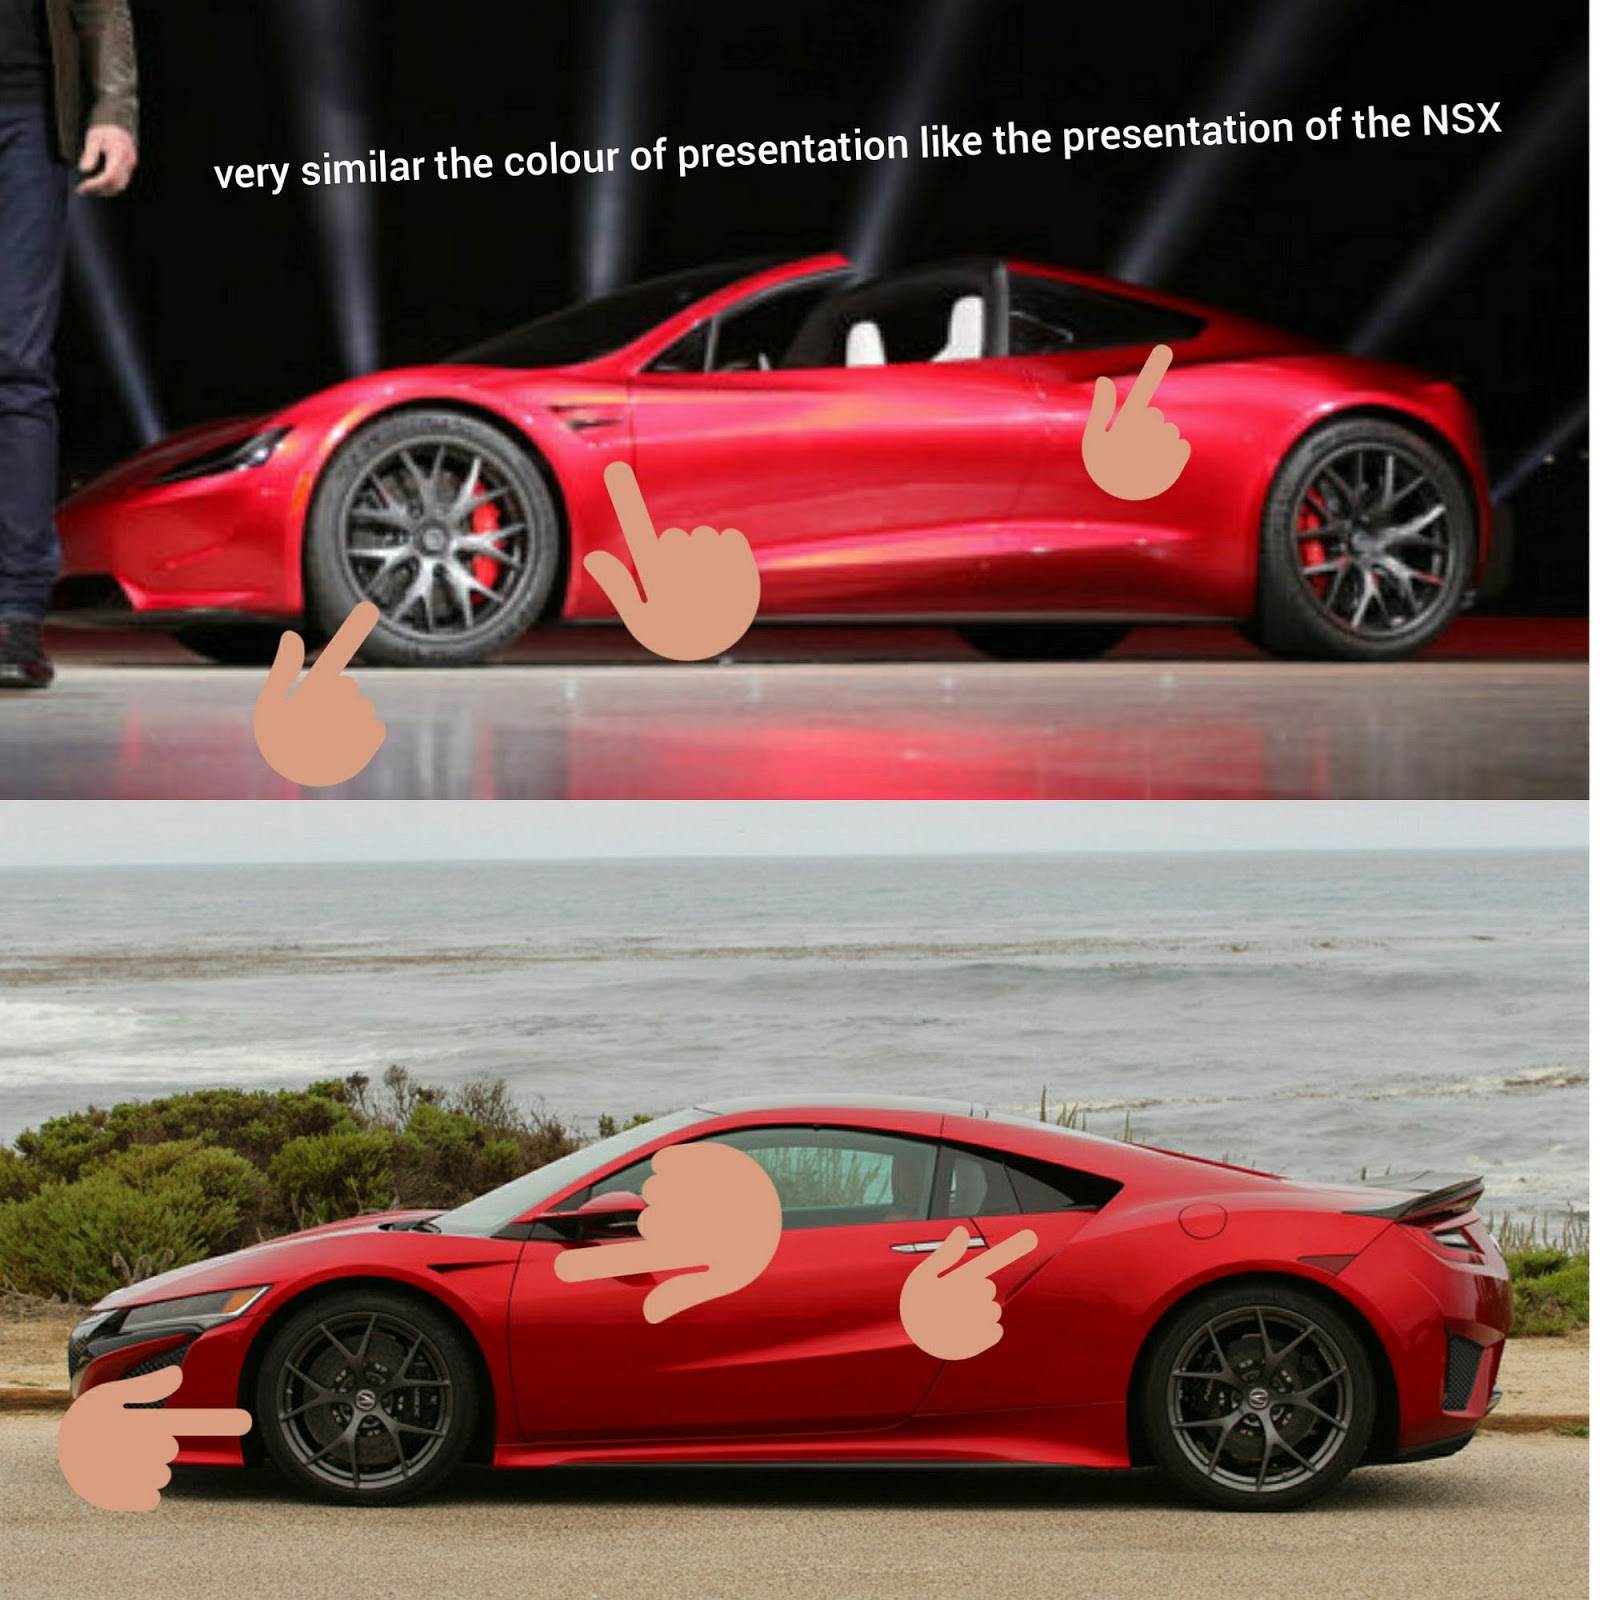 Tesla Roadster'ın tasarımı Honda NSX'in kopyası mı?